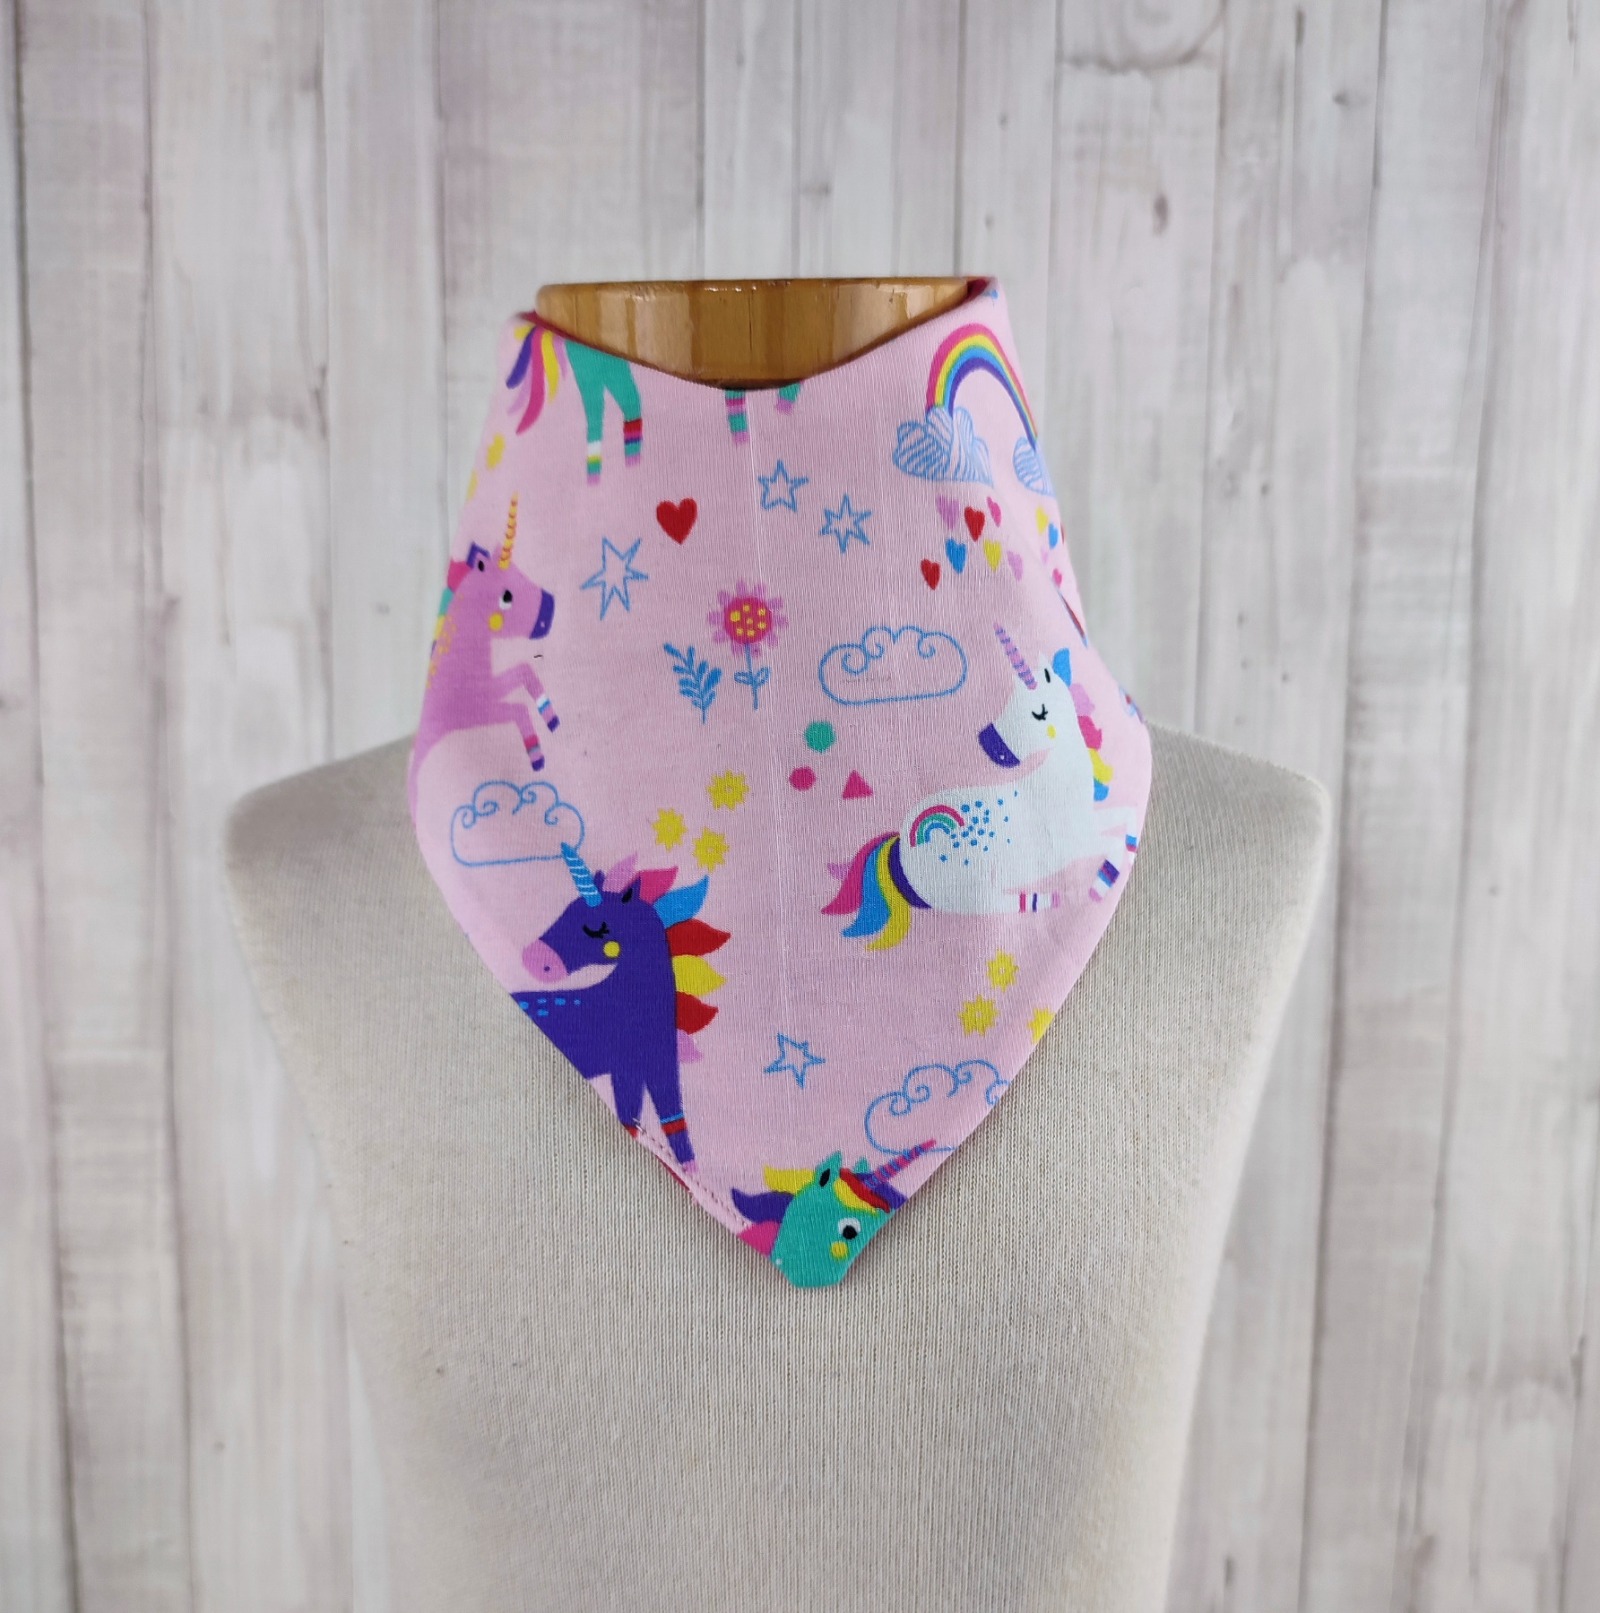 Halstuch Dreieckstuch für kleine Mädchen - rosa - gemustert mit Einhörnern und Regenbogen